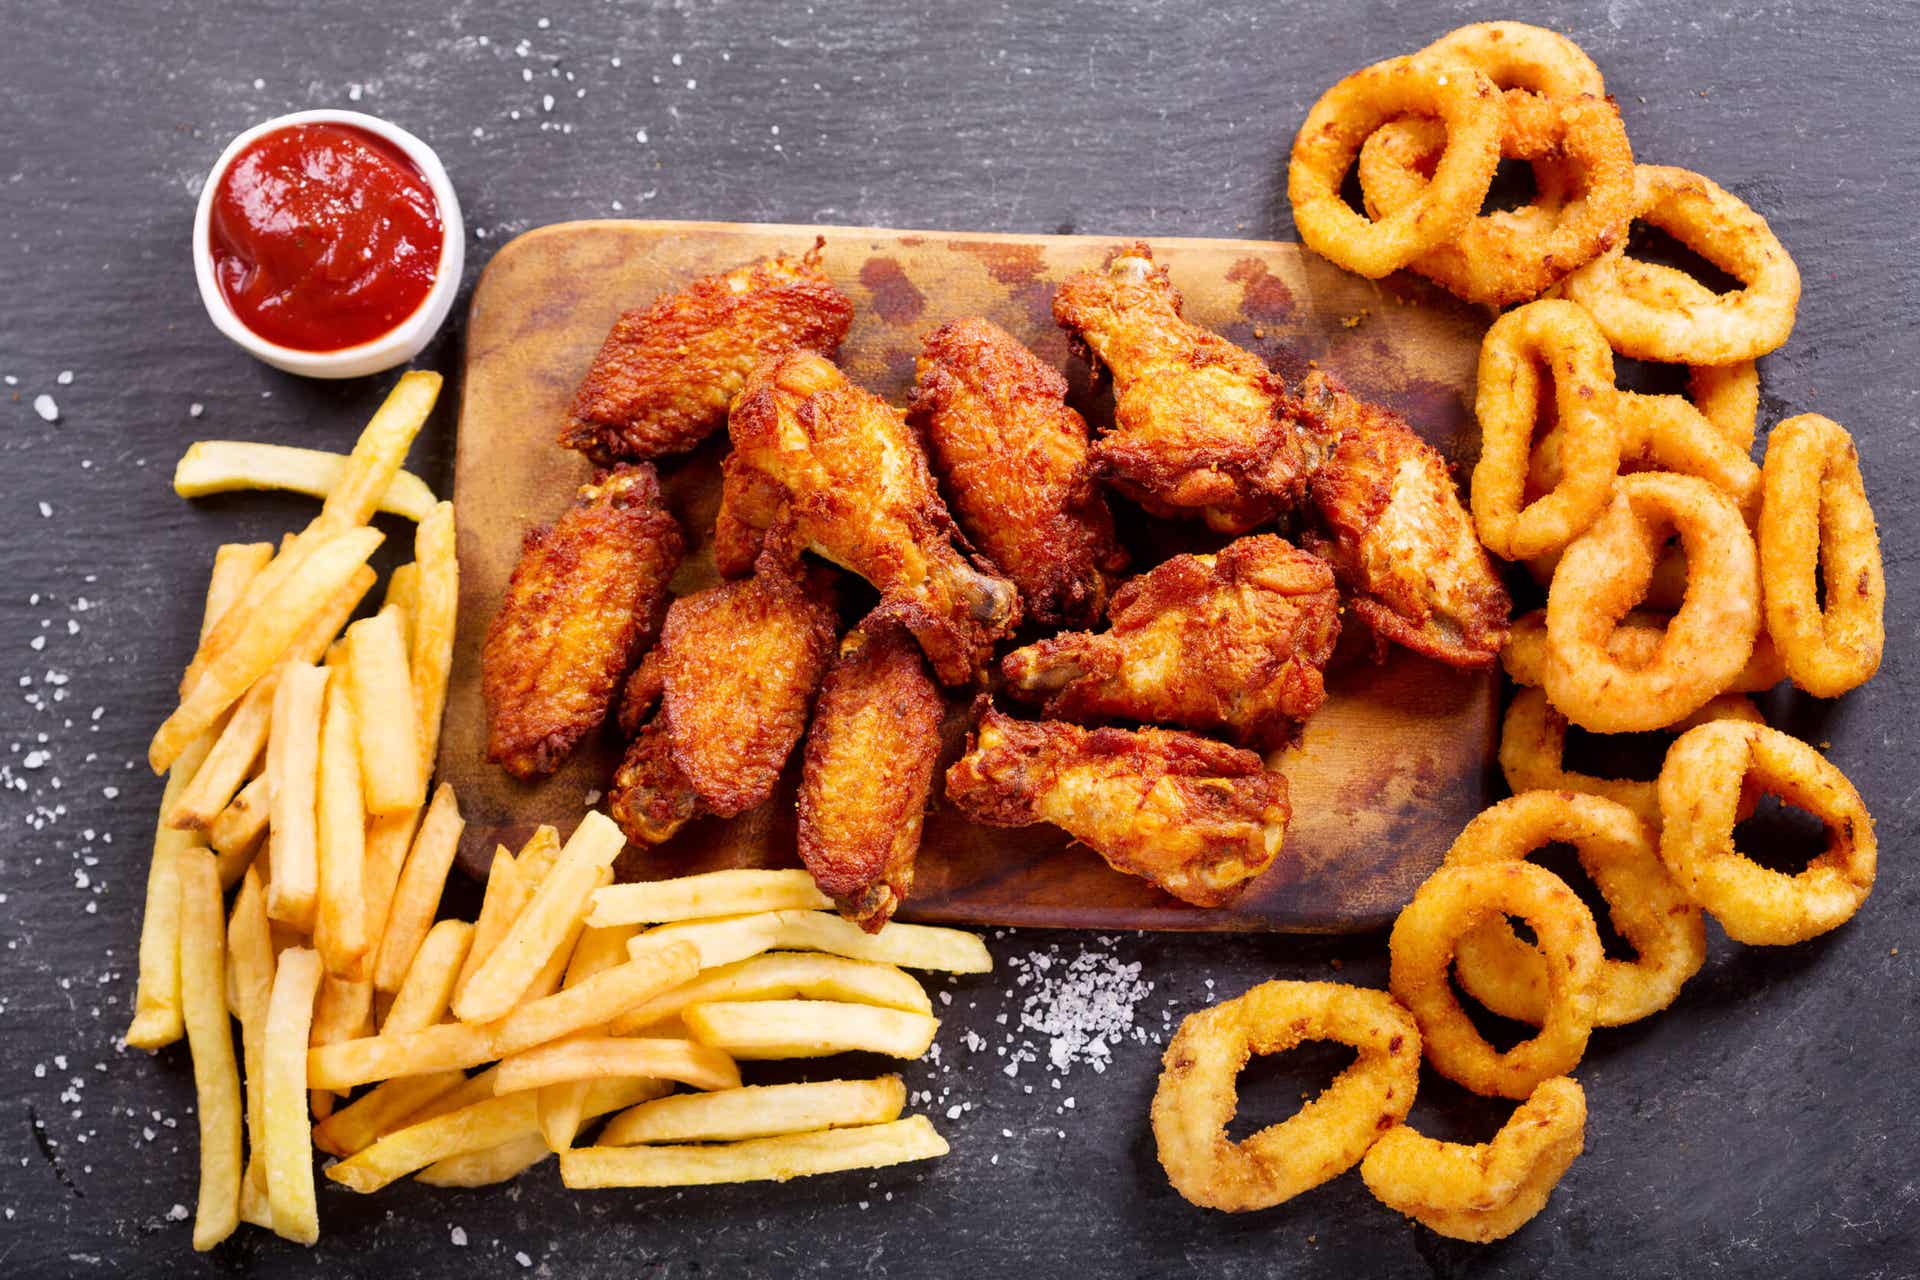 Les aliments frits augmentent le mauvais cholestérol.